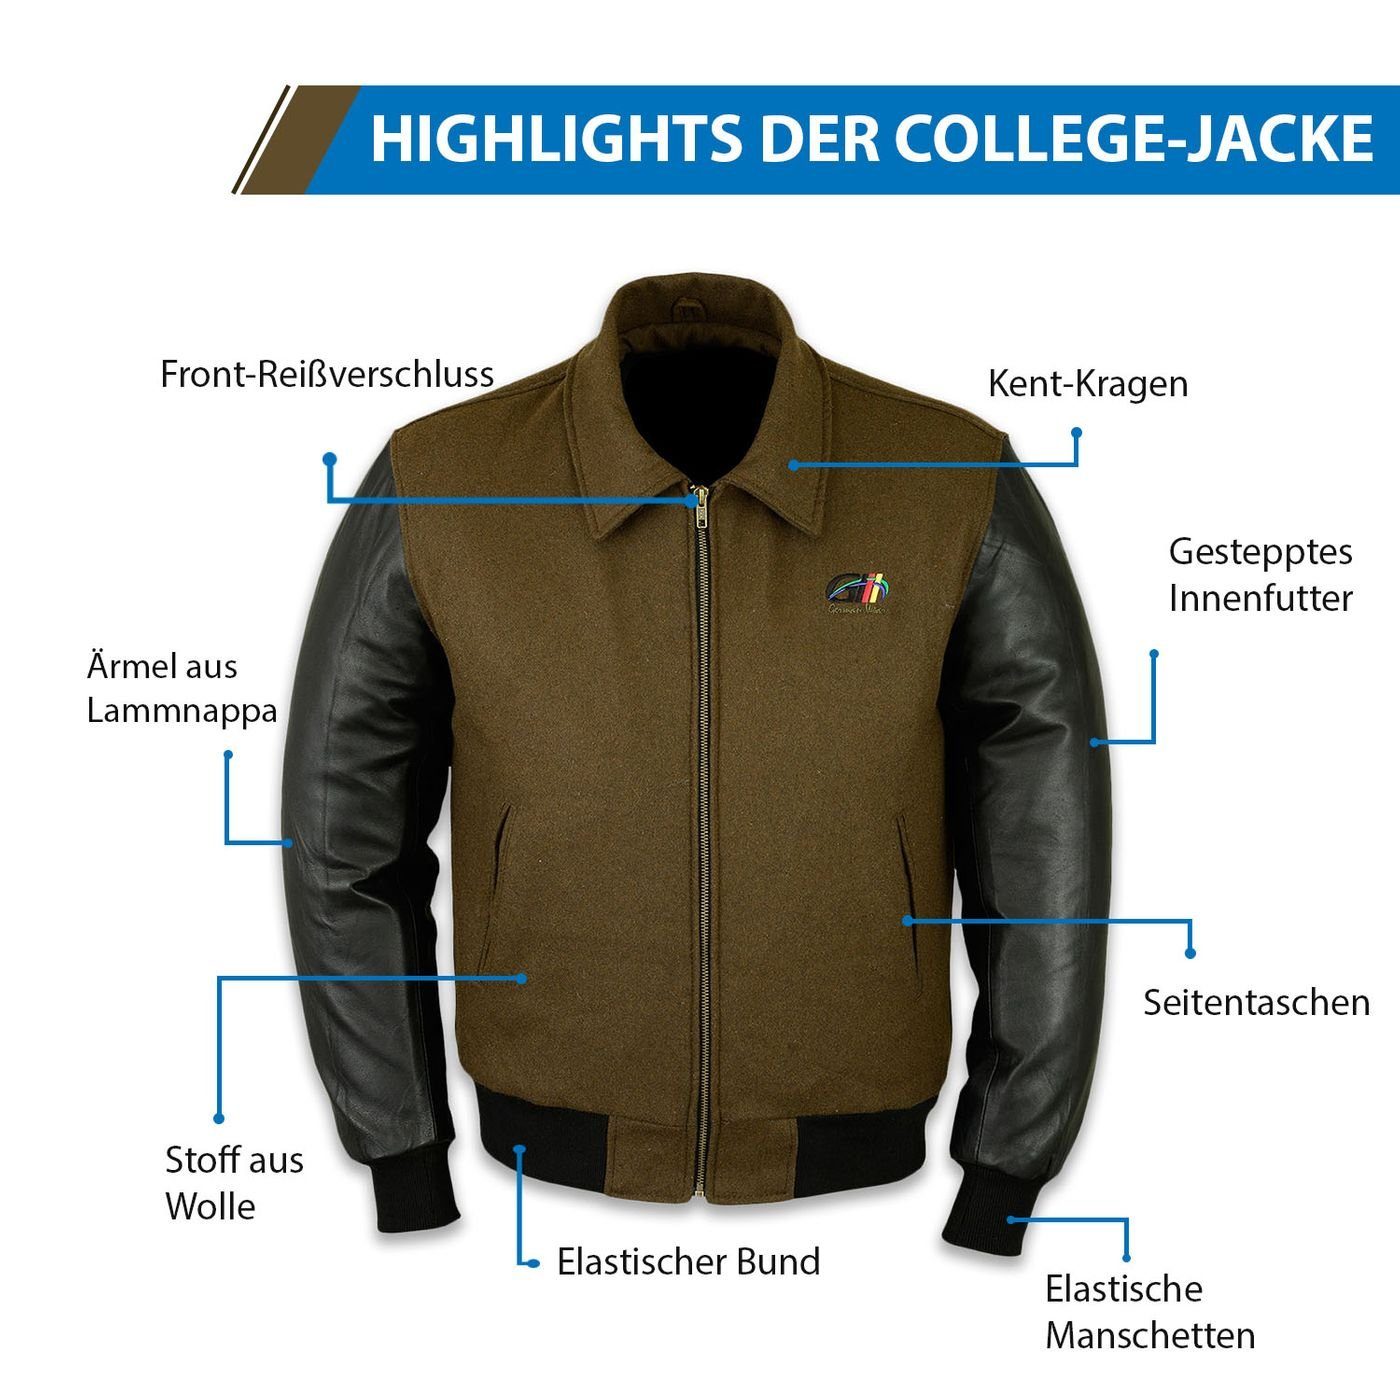 CJ001 Khaki Collegejacke Lederärmeln mit Collegejacke Wear Wolljacke German